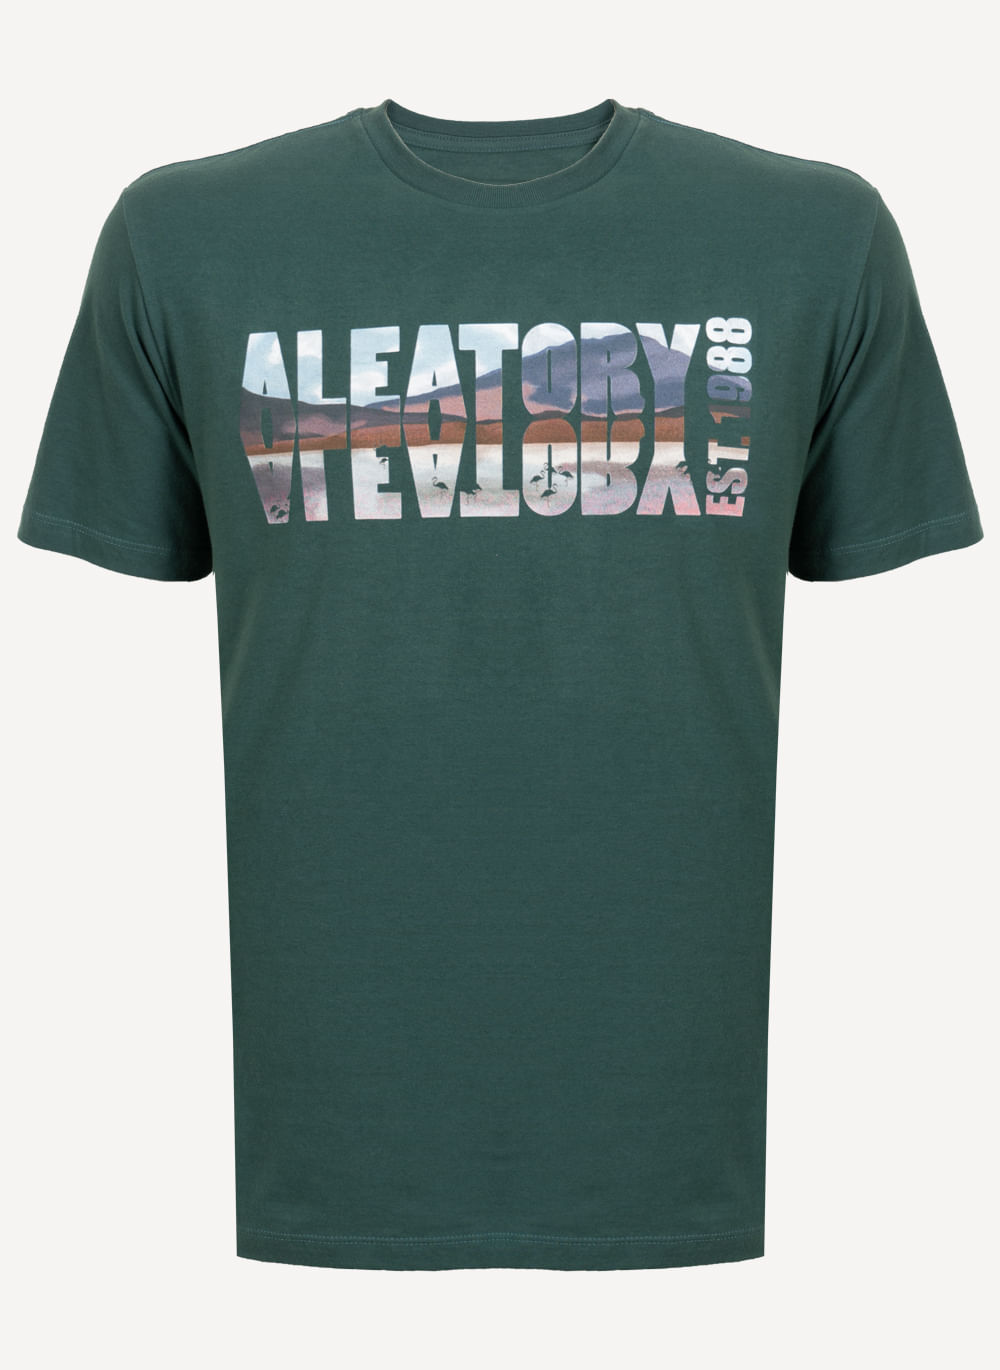 Camiseta-Estampada-Aleatory-Horizon-Verde-Verde-P